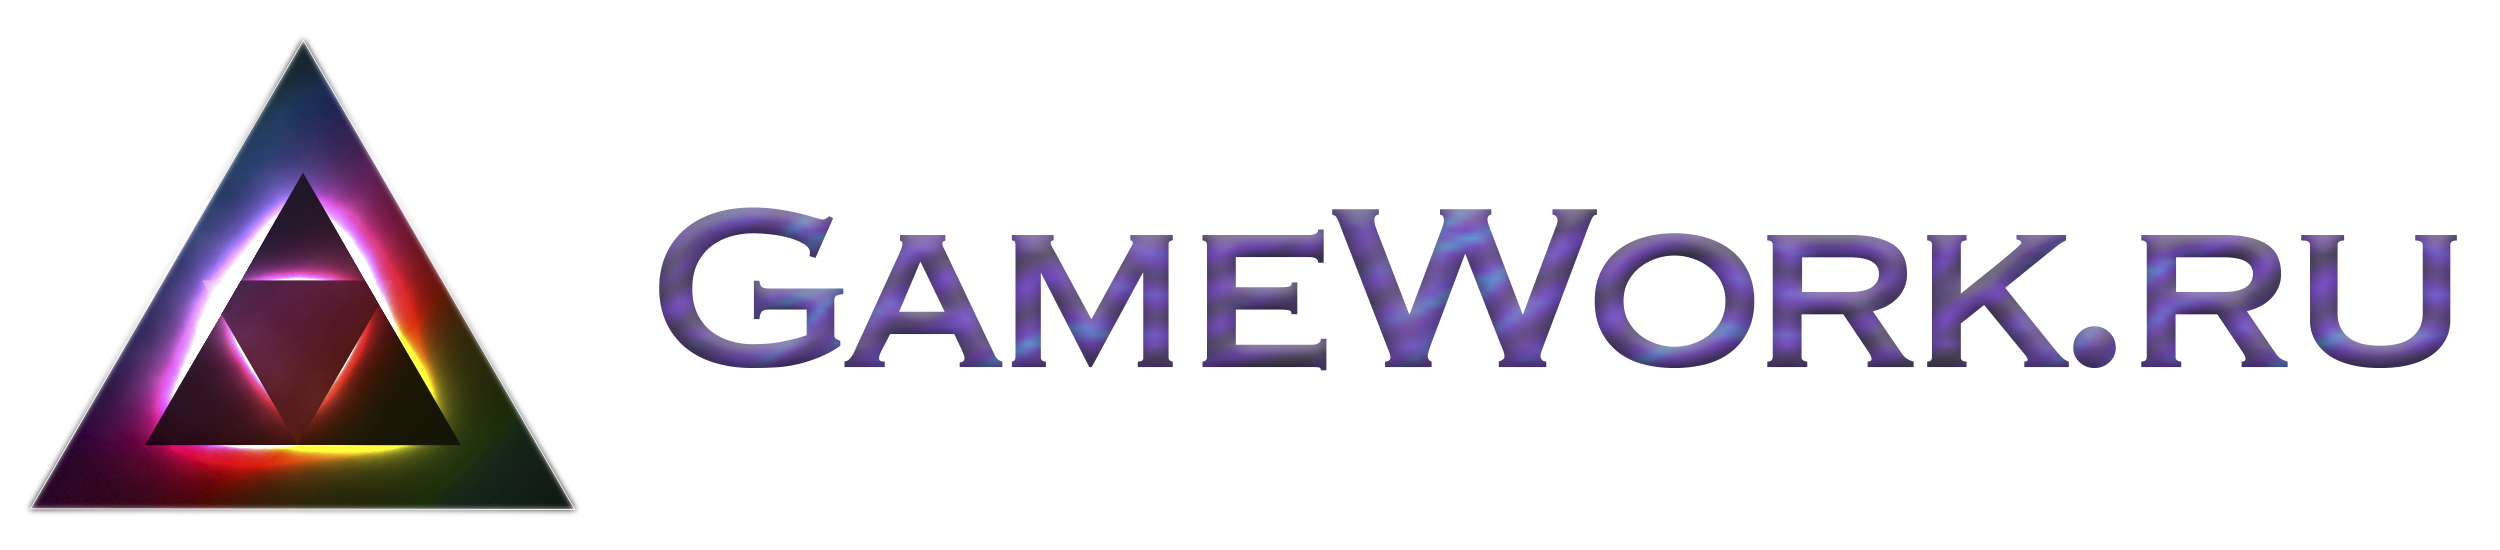 GameWork - разработка мобильных игр и полезных приложений для бизнеса и жизни